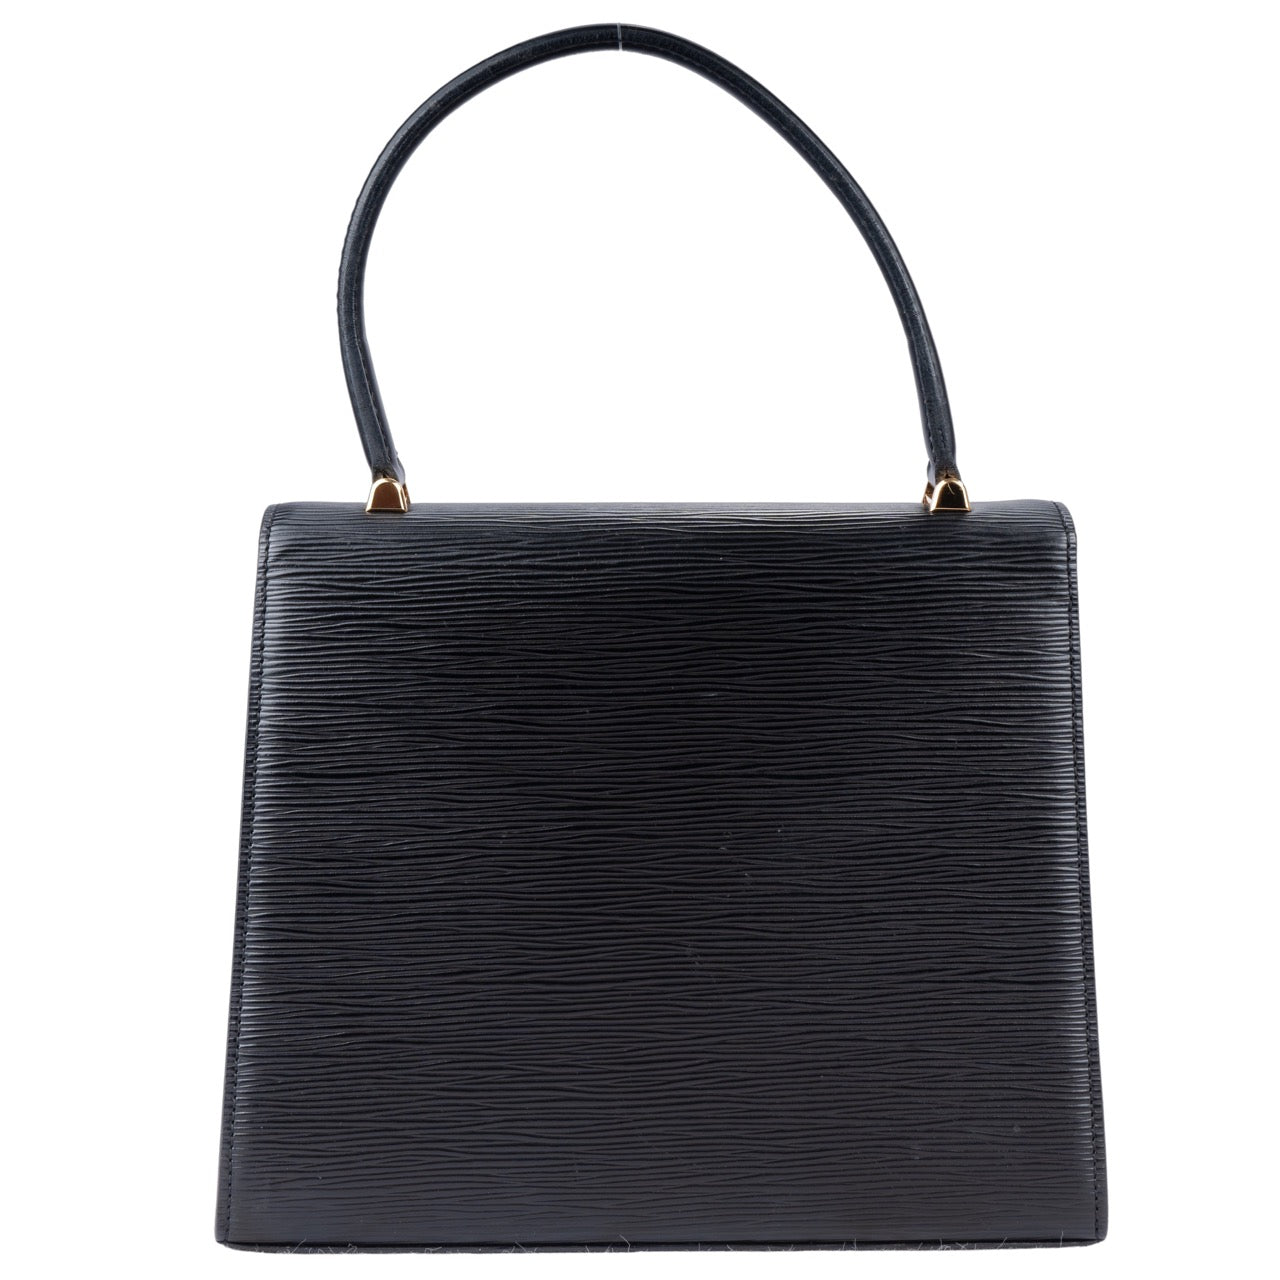 Louis Vuitton Epi Leather Malesherbes Black